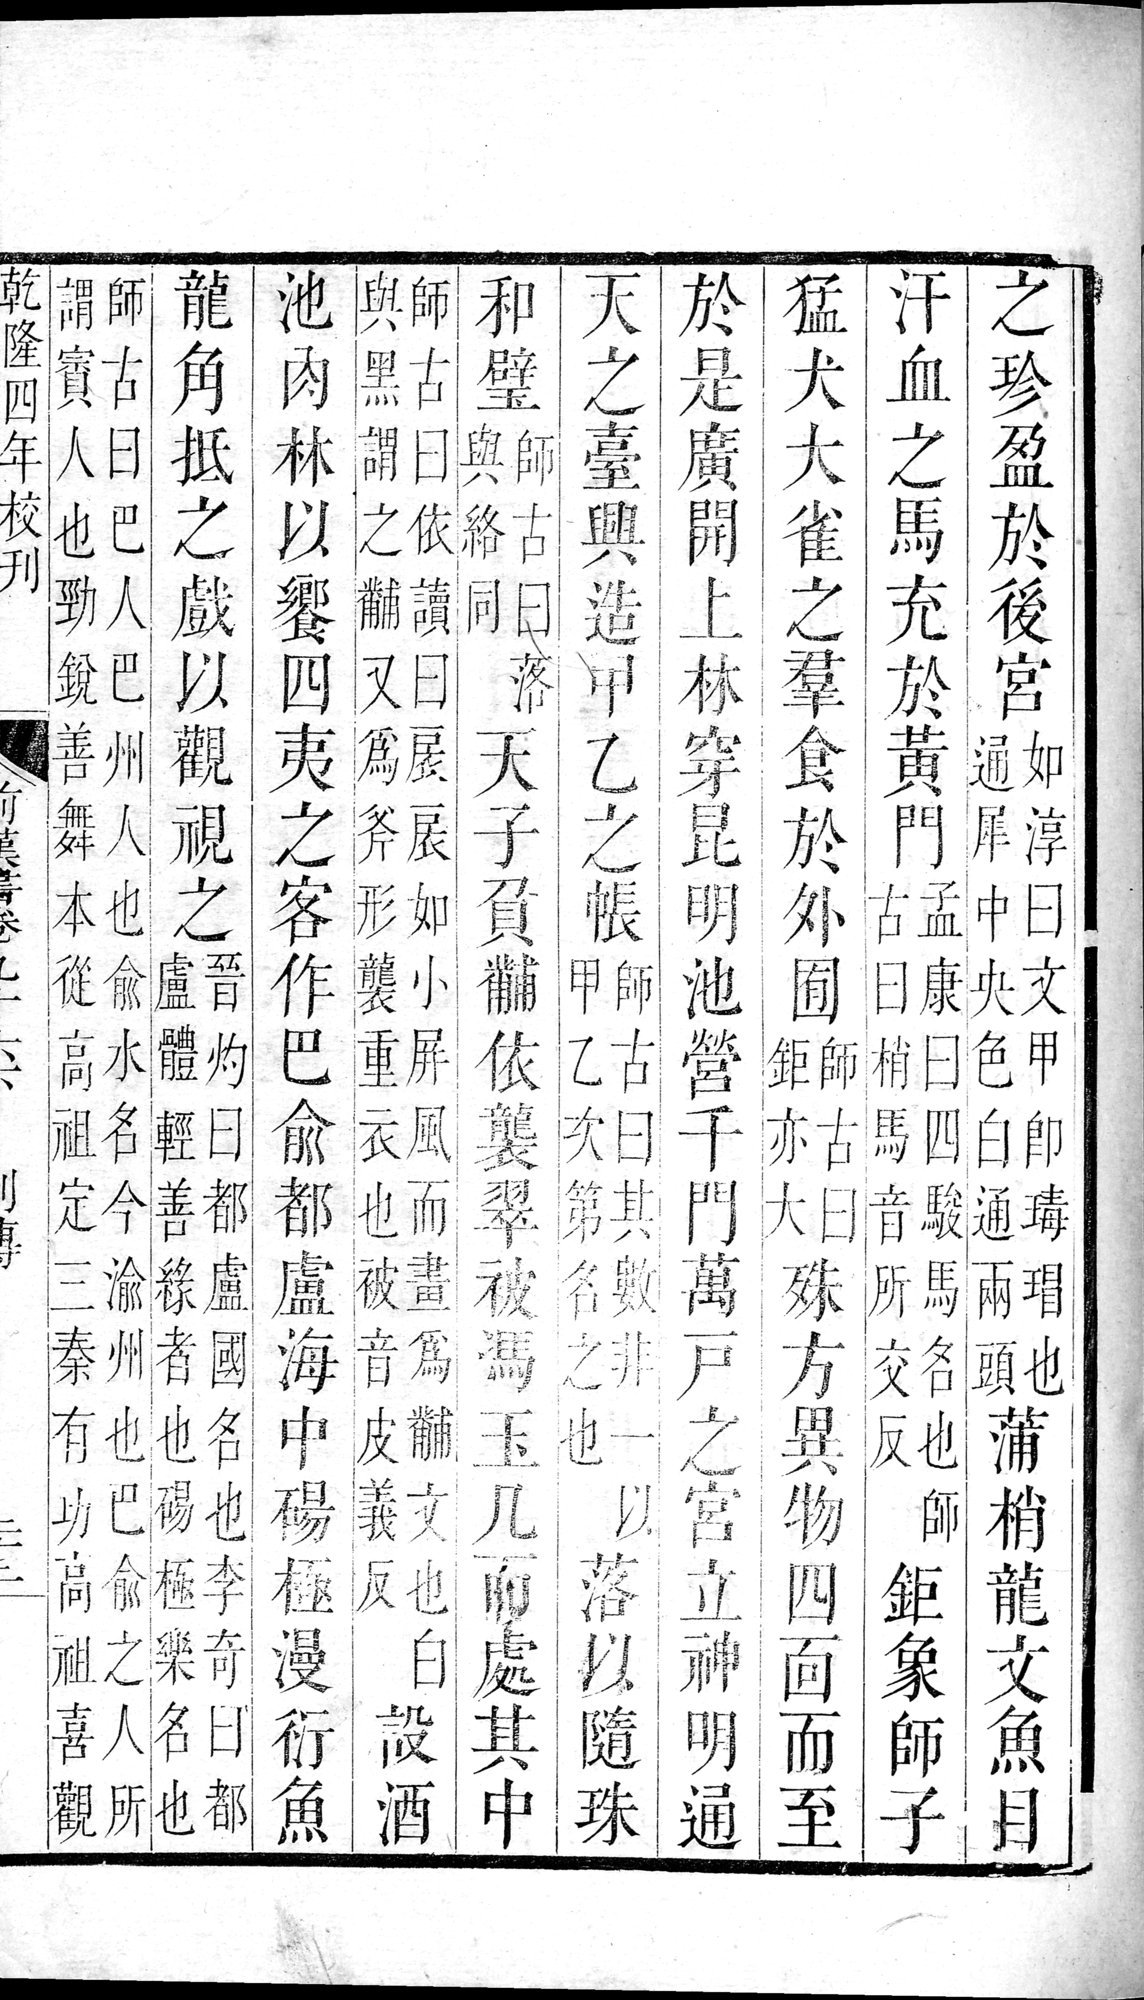 前漢書 巻96下 : vol.96 bottom / Page 45 (Grayscale High Resolution Image)